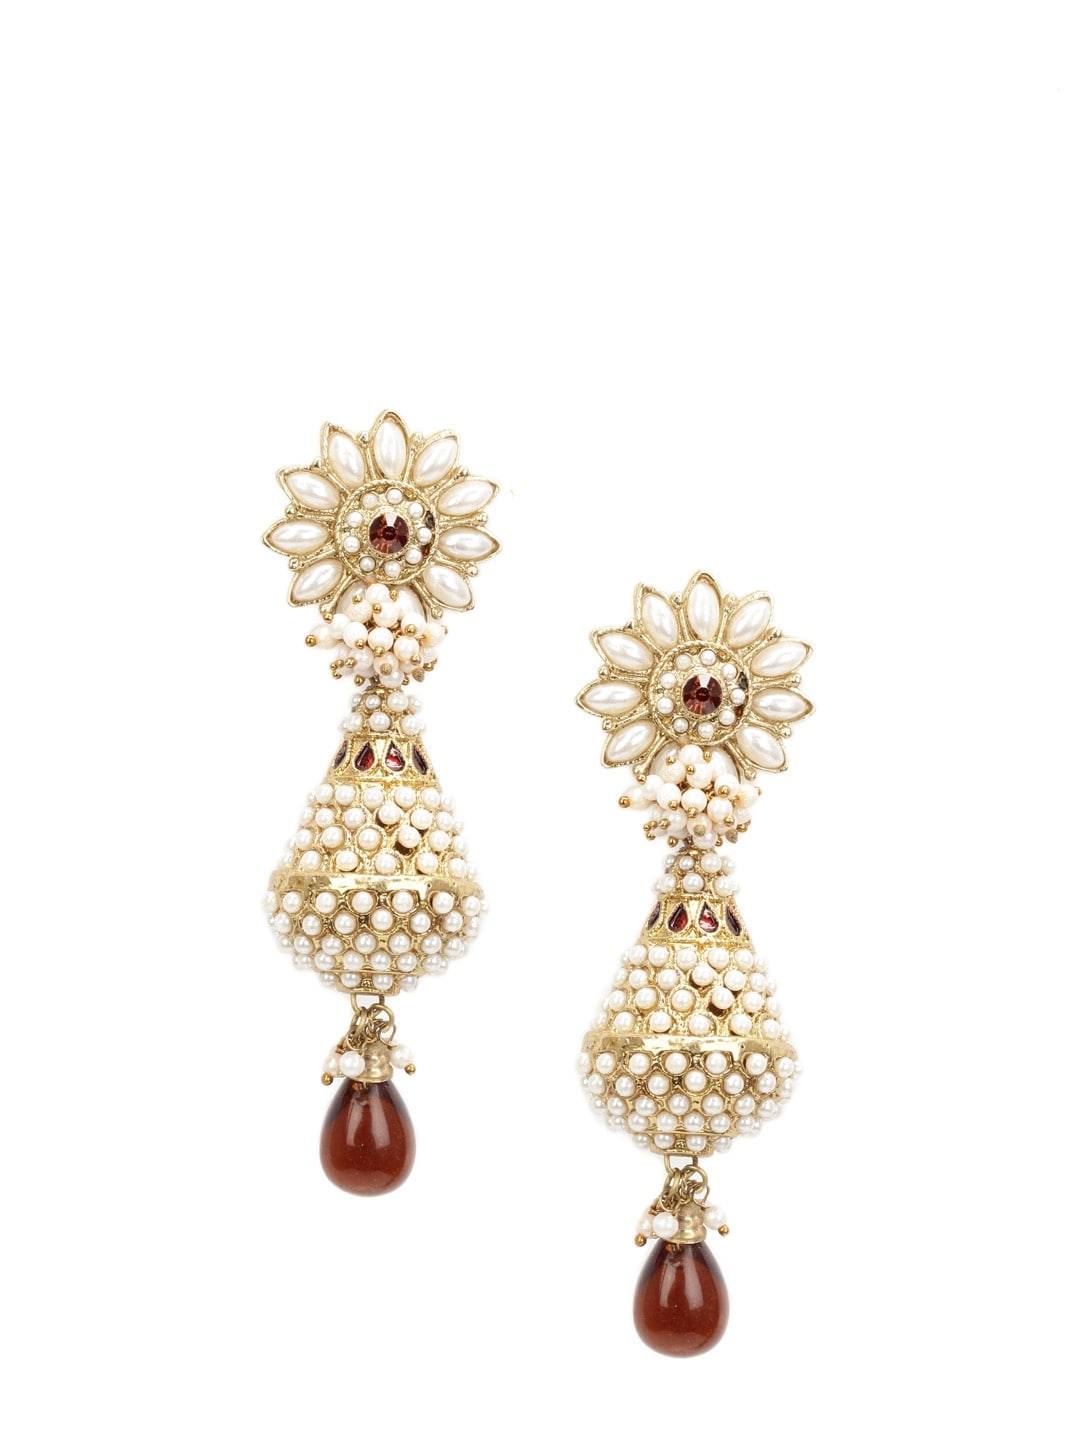 Royal Diadem Earrings